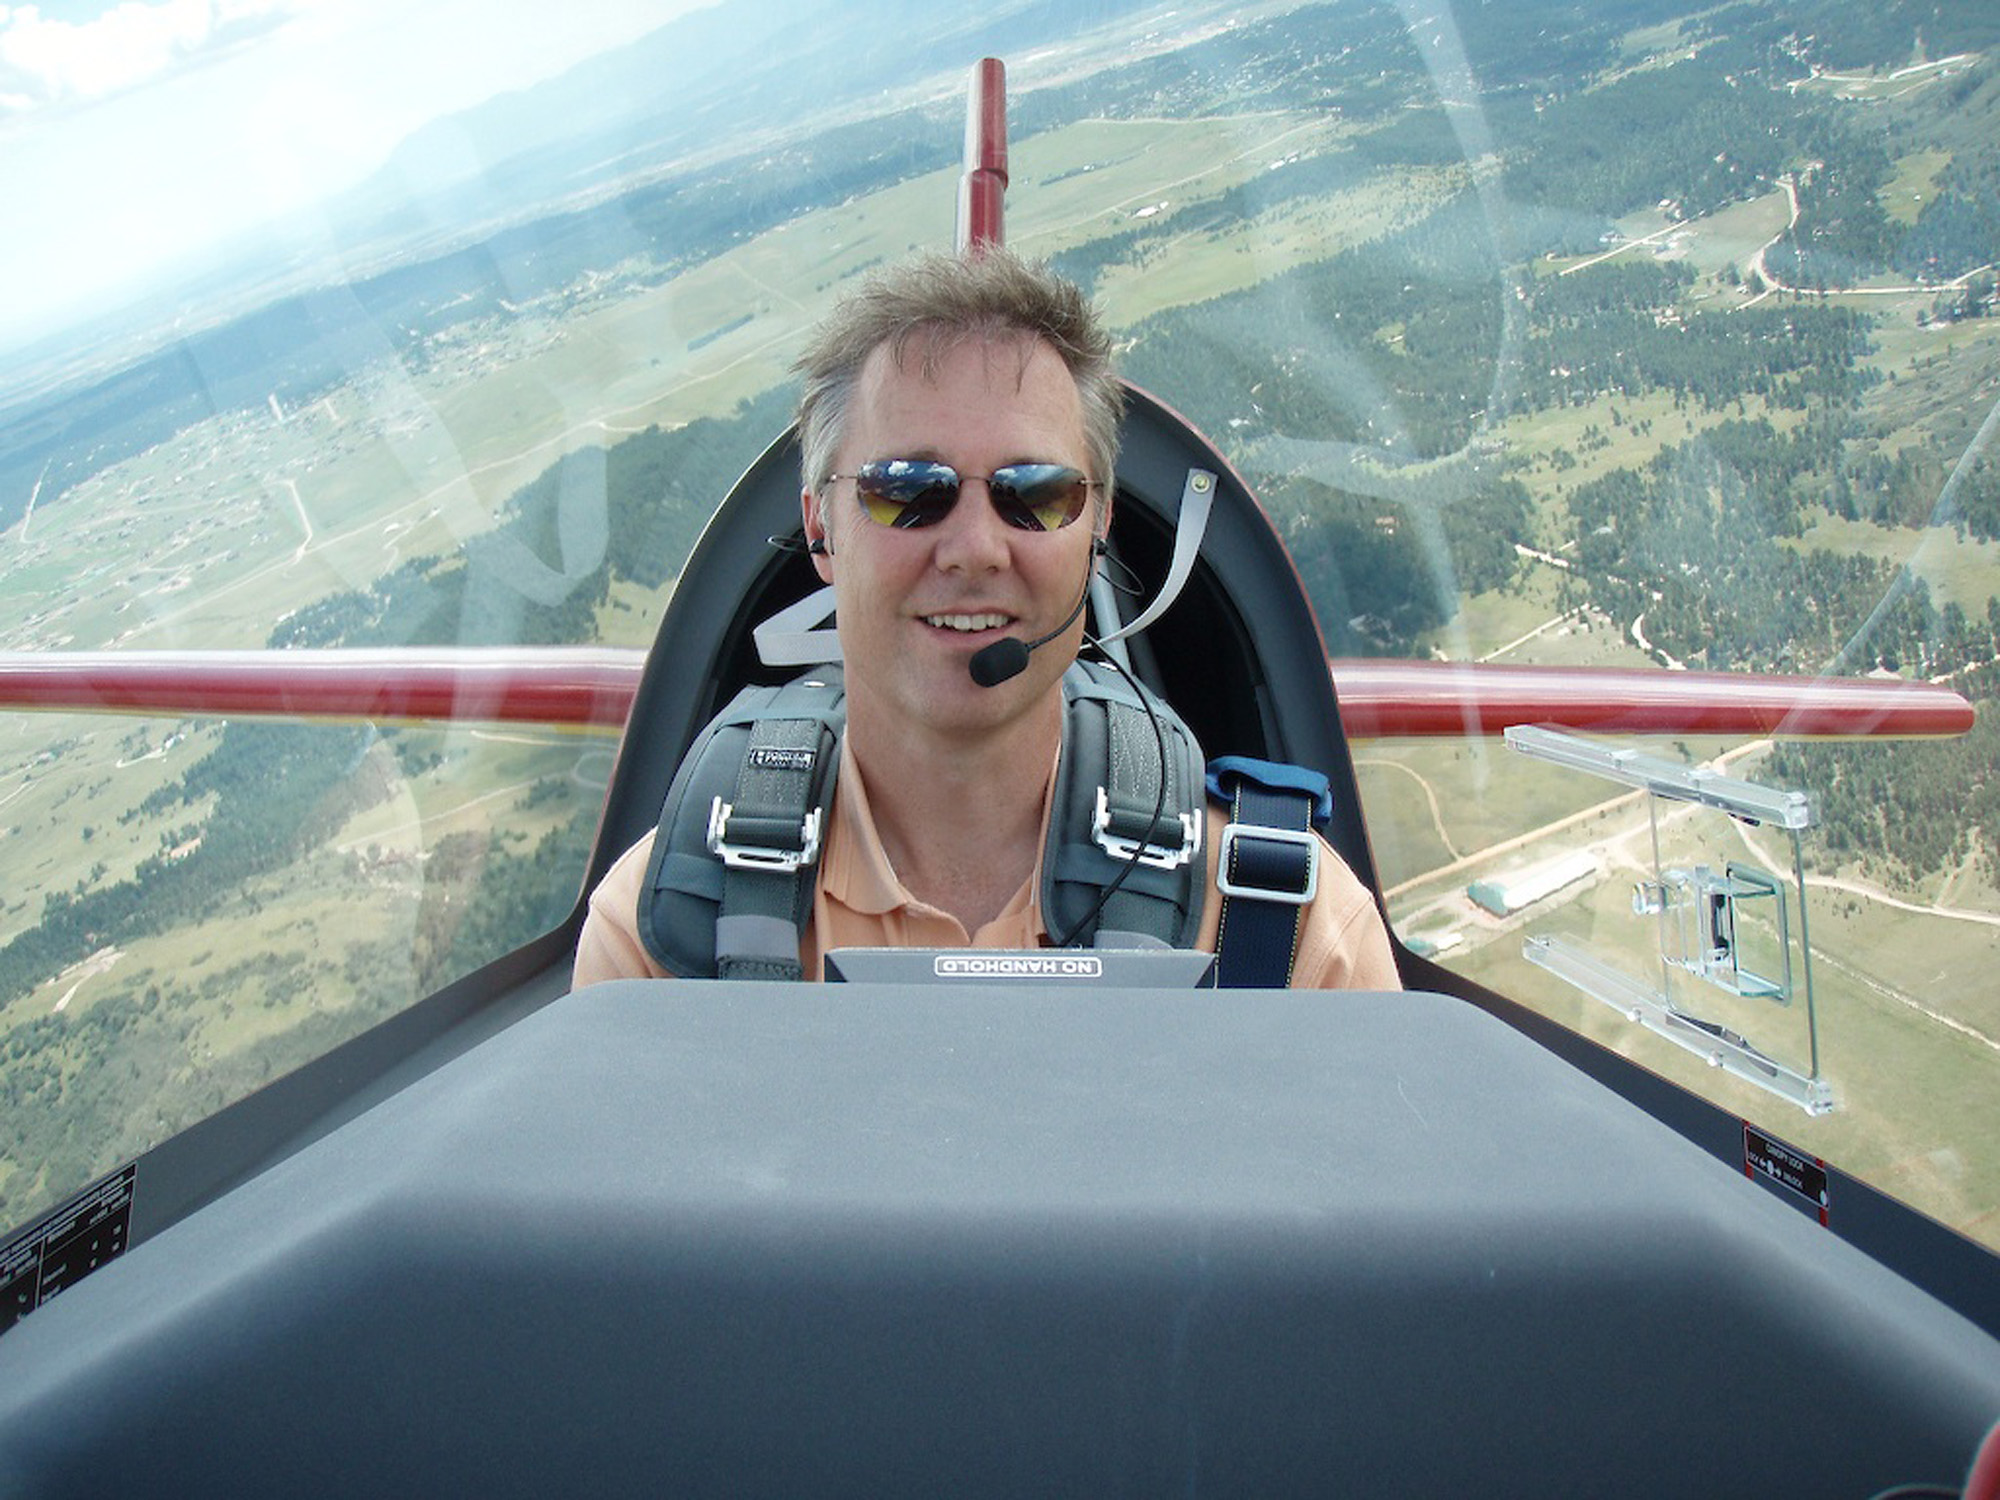 Jeff Puckett Brings Spirit to the Skies